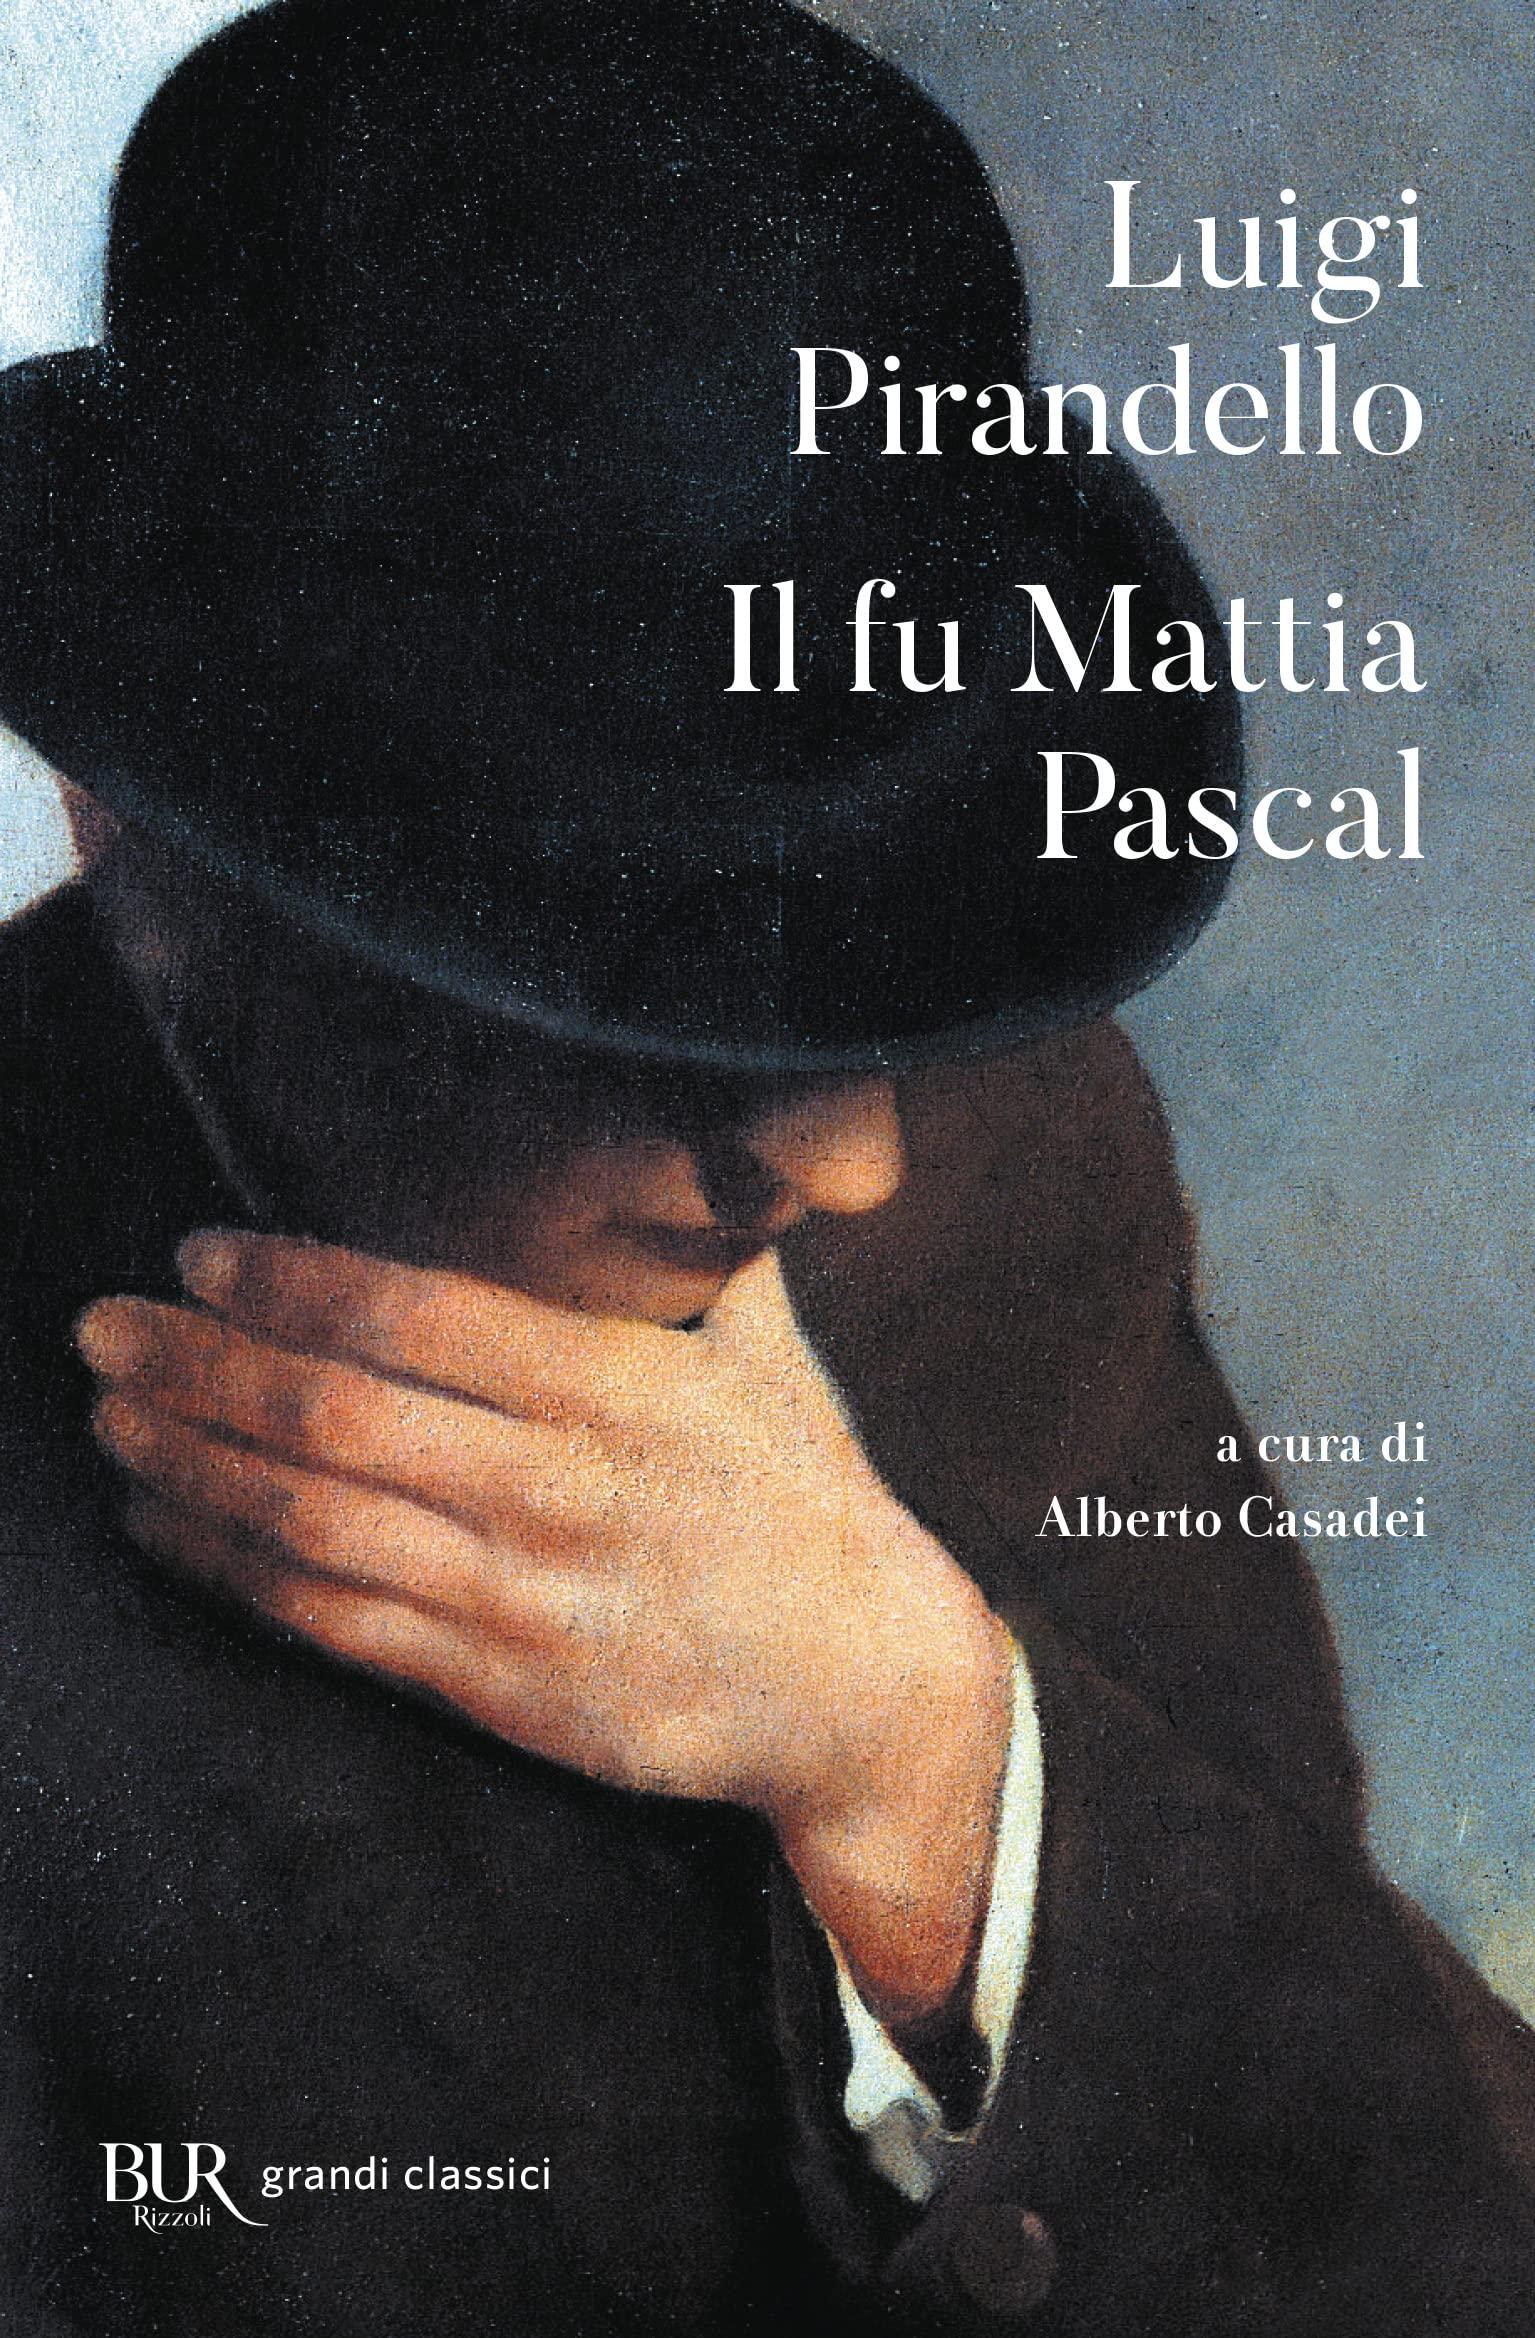 Libro "Il fu Mattia Pascal" di Luigi Pirandello